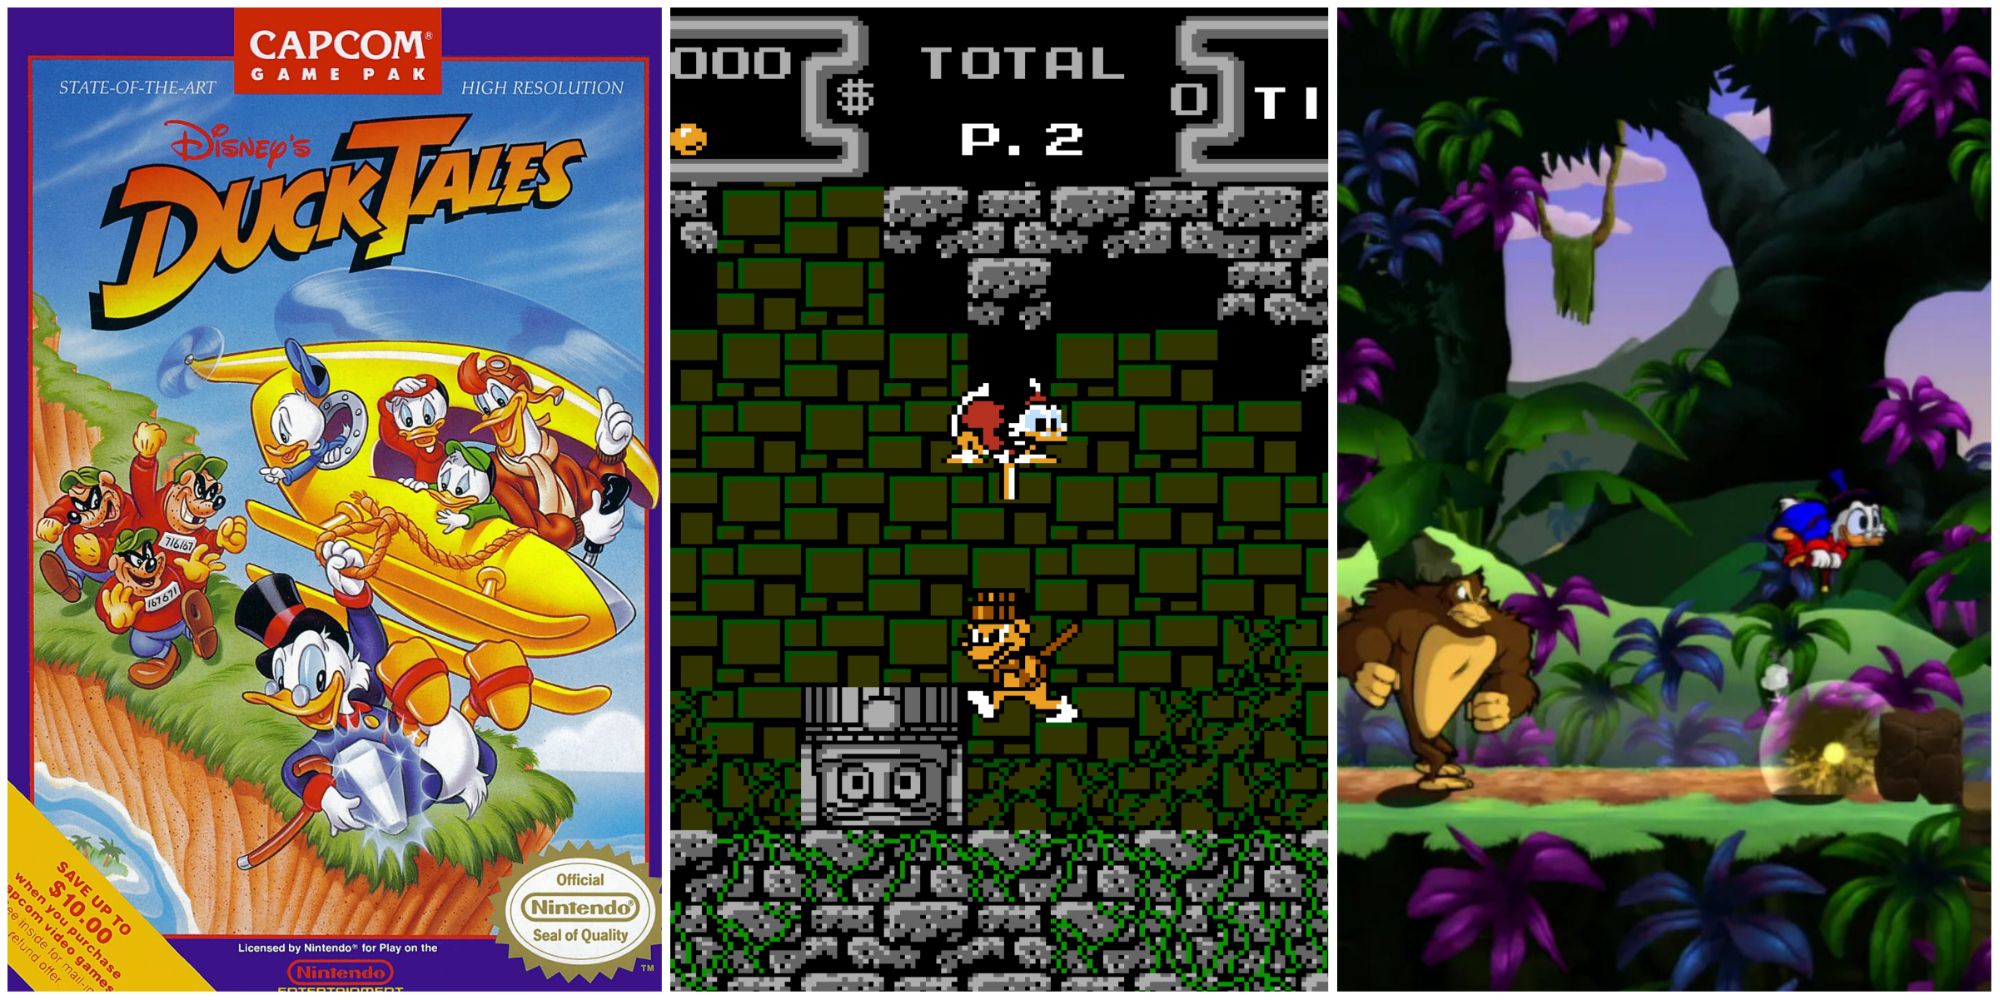 DuckTales NES Cover Art, Duck Tales NES Gameplay, DuckTales Remastered Gameplay